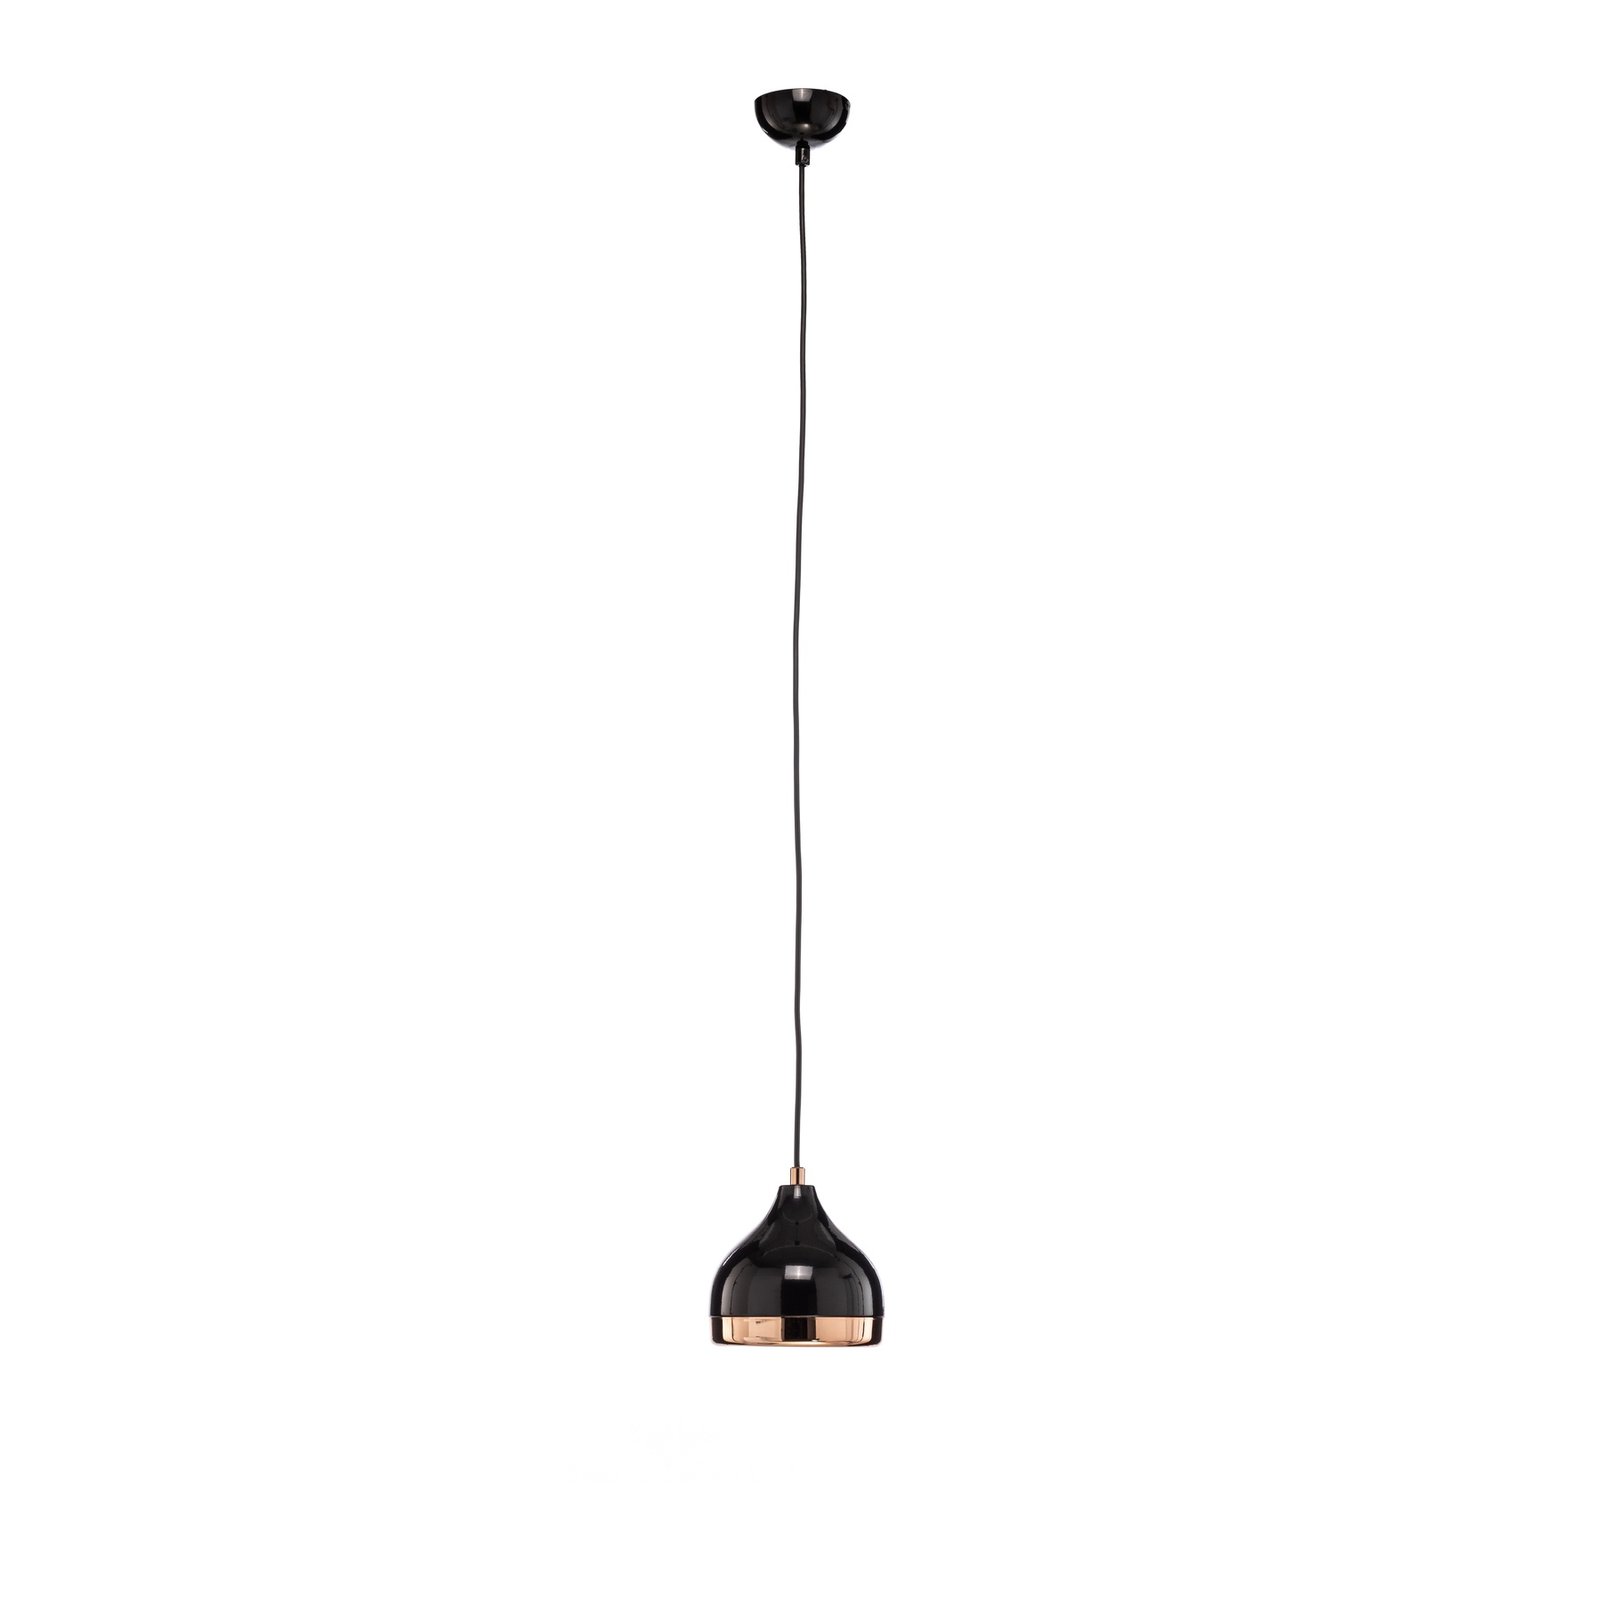 Yildo 6866 lampă suspendată 1 bec Ø17cm negru/cupr